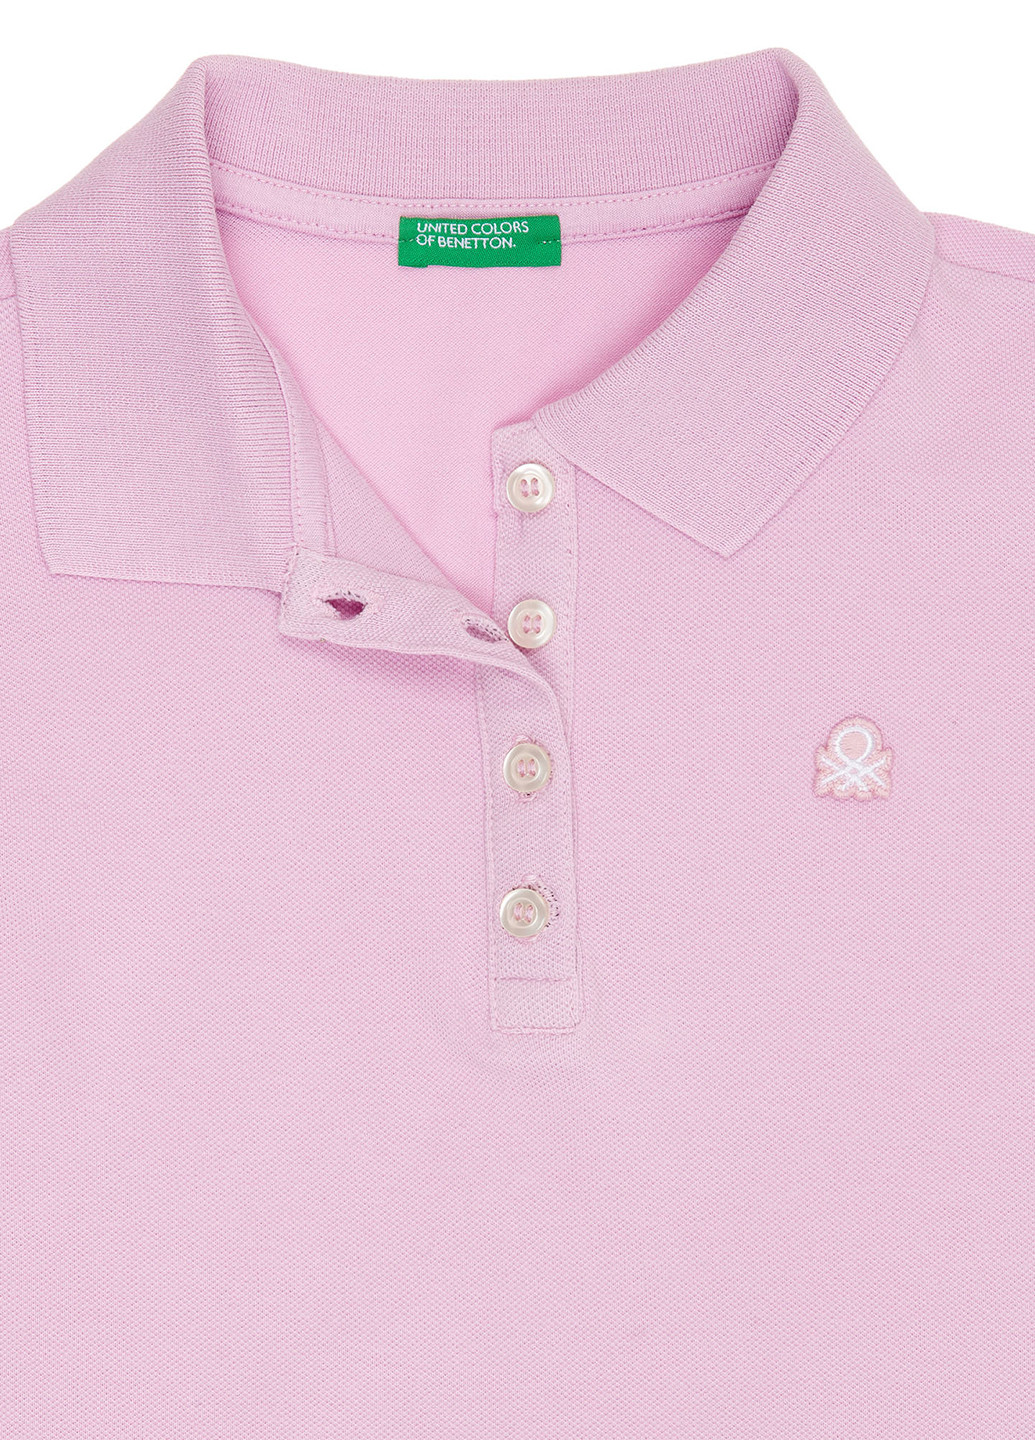 Розовая детская футболка-поло для девочки United Colors of Benetton с логотипом